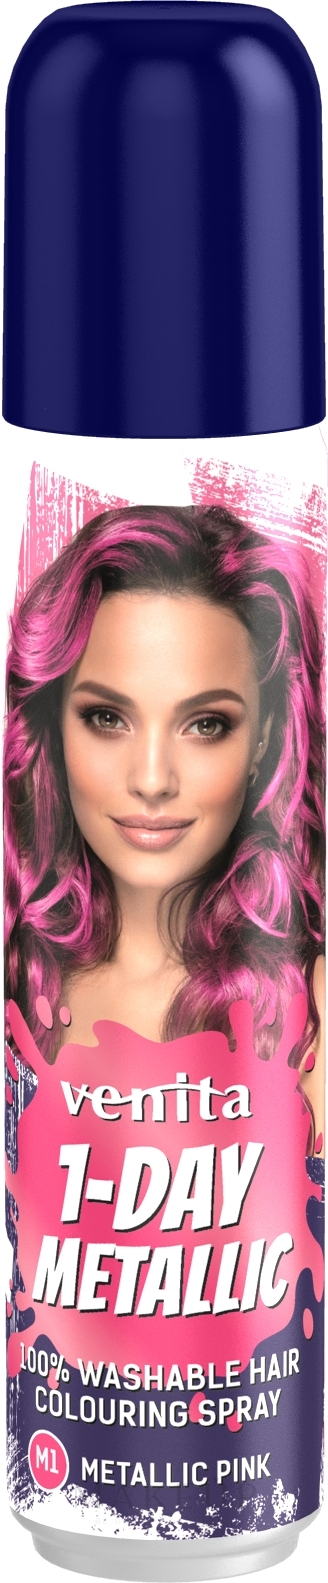 Farbiges Haarspray auswaschbar - Venita 1-Day Color Metallic Spray — Foto M1 - Pink